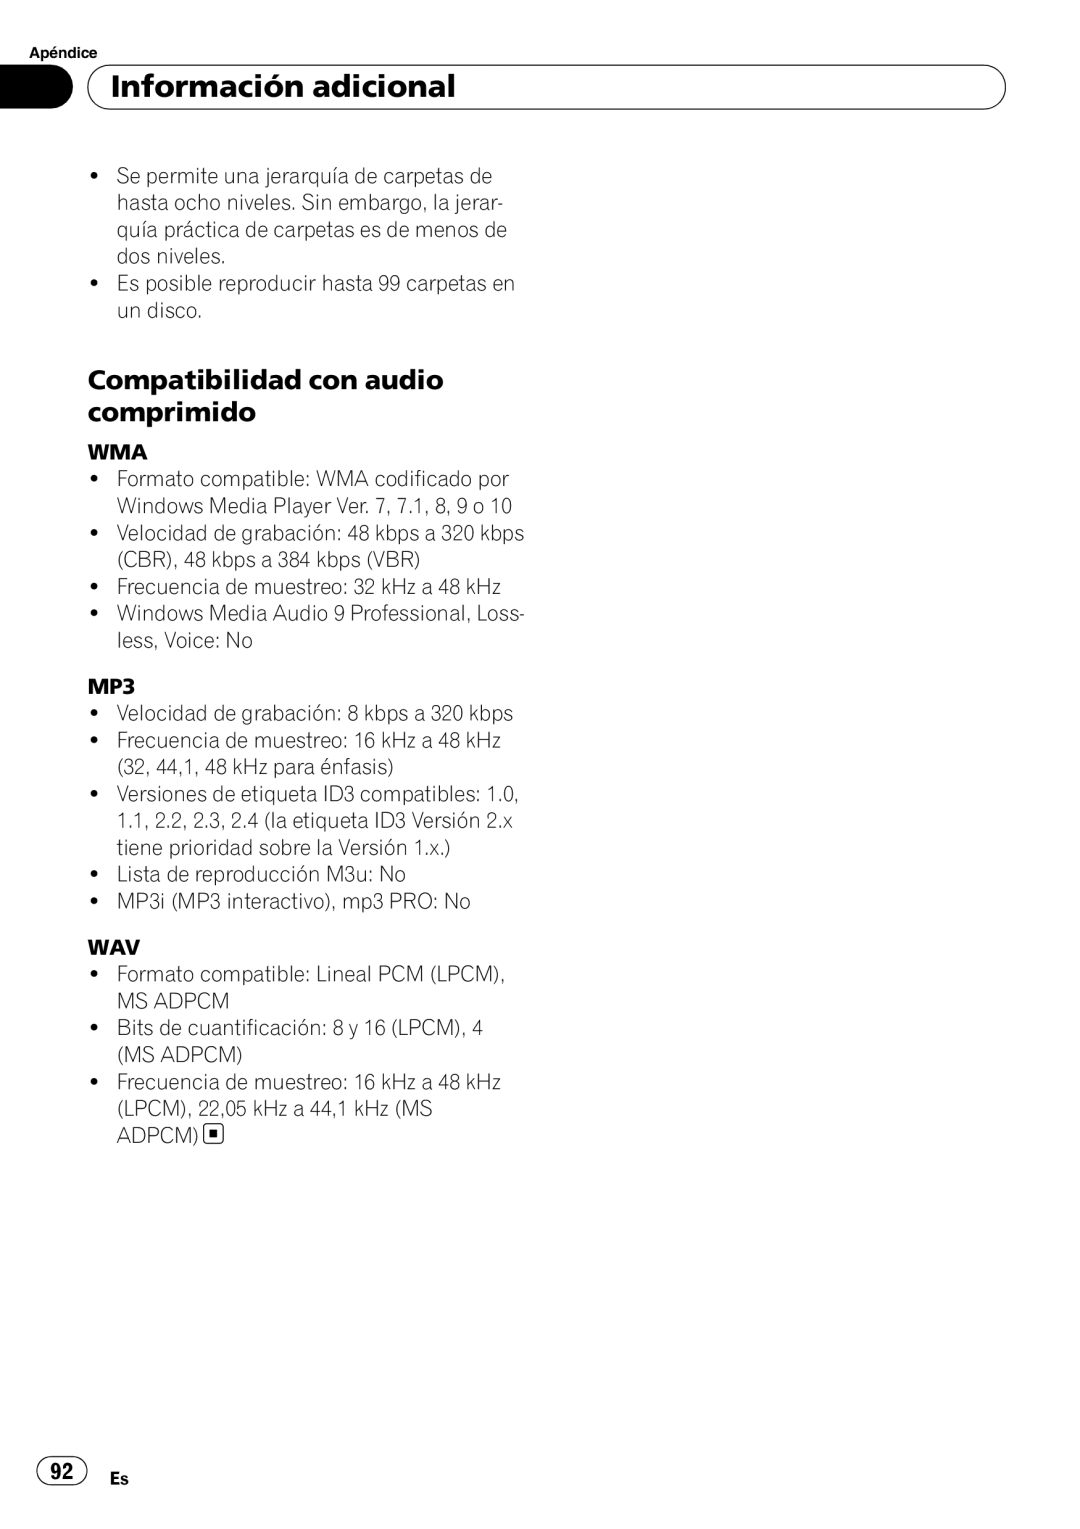 Sony DEH-P2900MP operation manual Compatibilidad con audio comprimido, Información adicional 